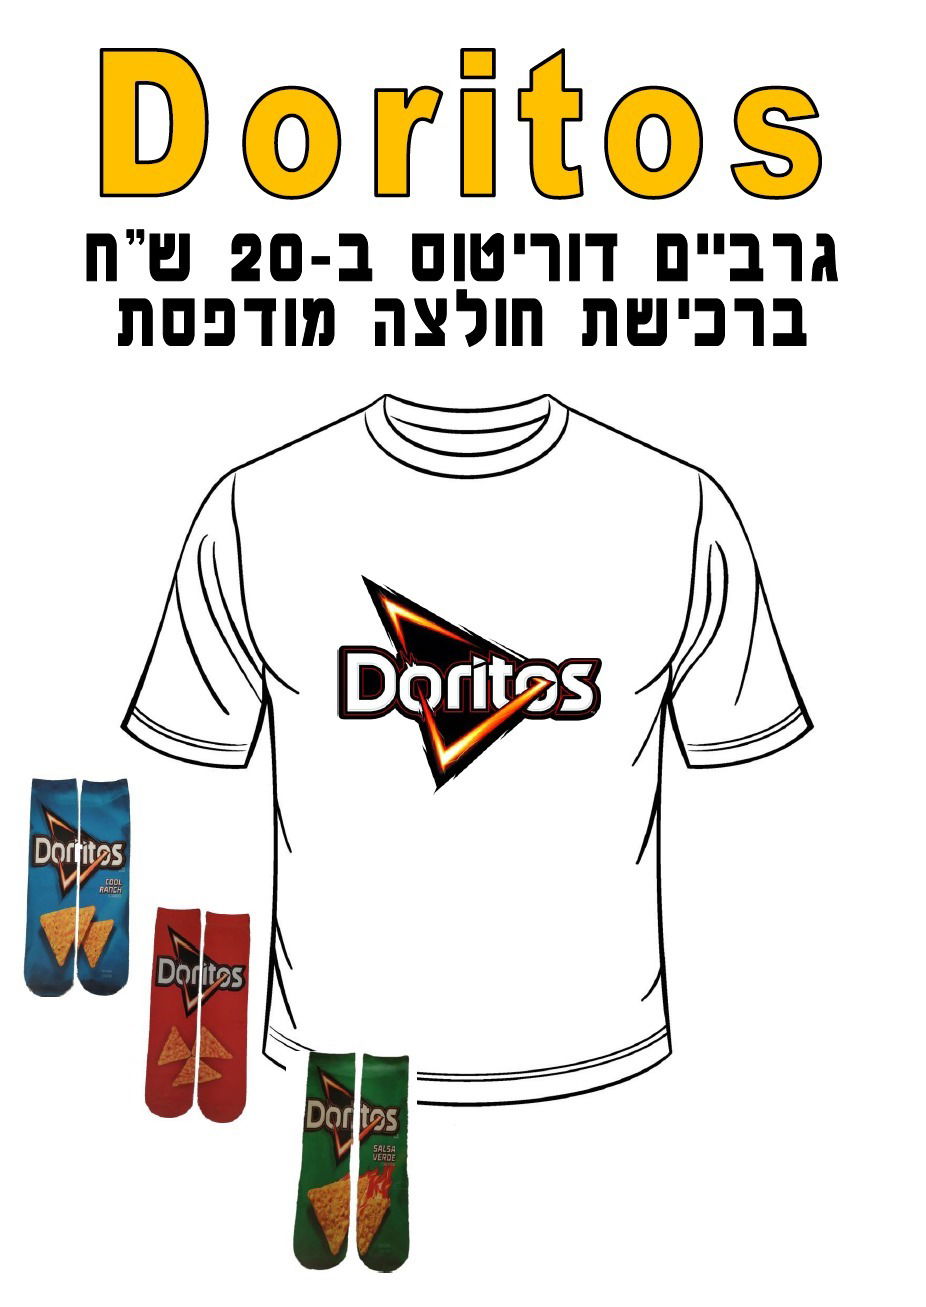 חולצה מודפסת לפורים - Doritos